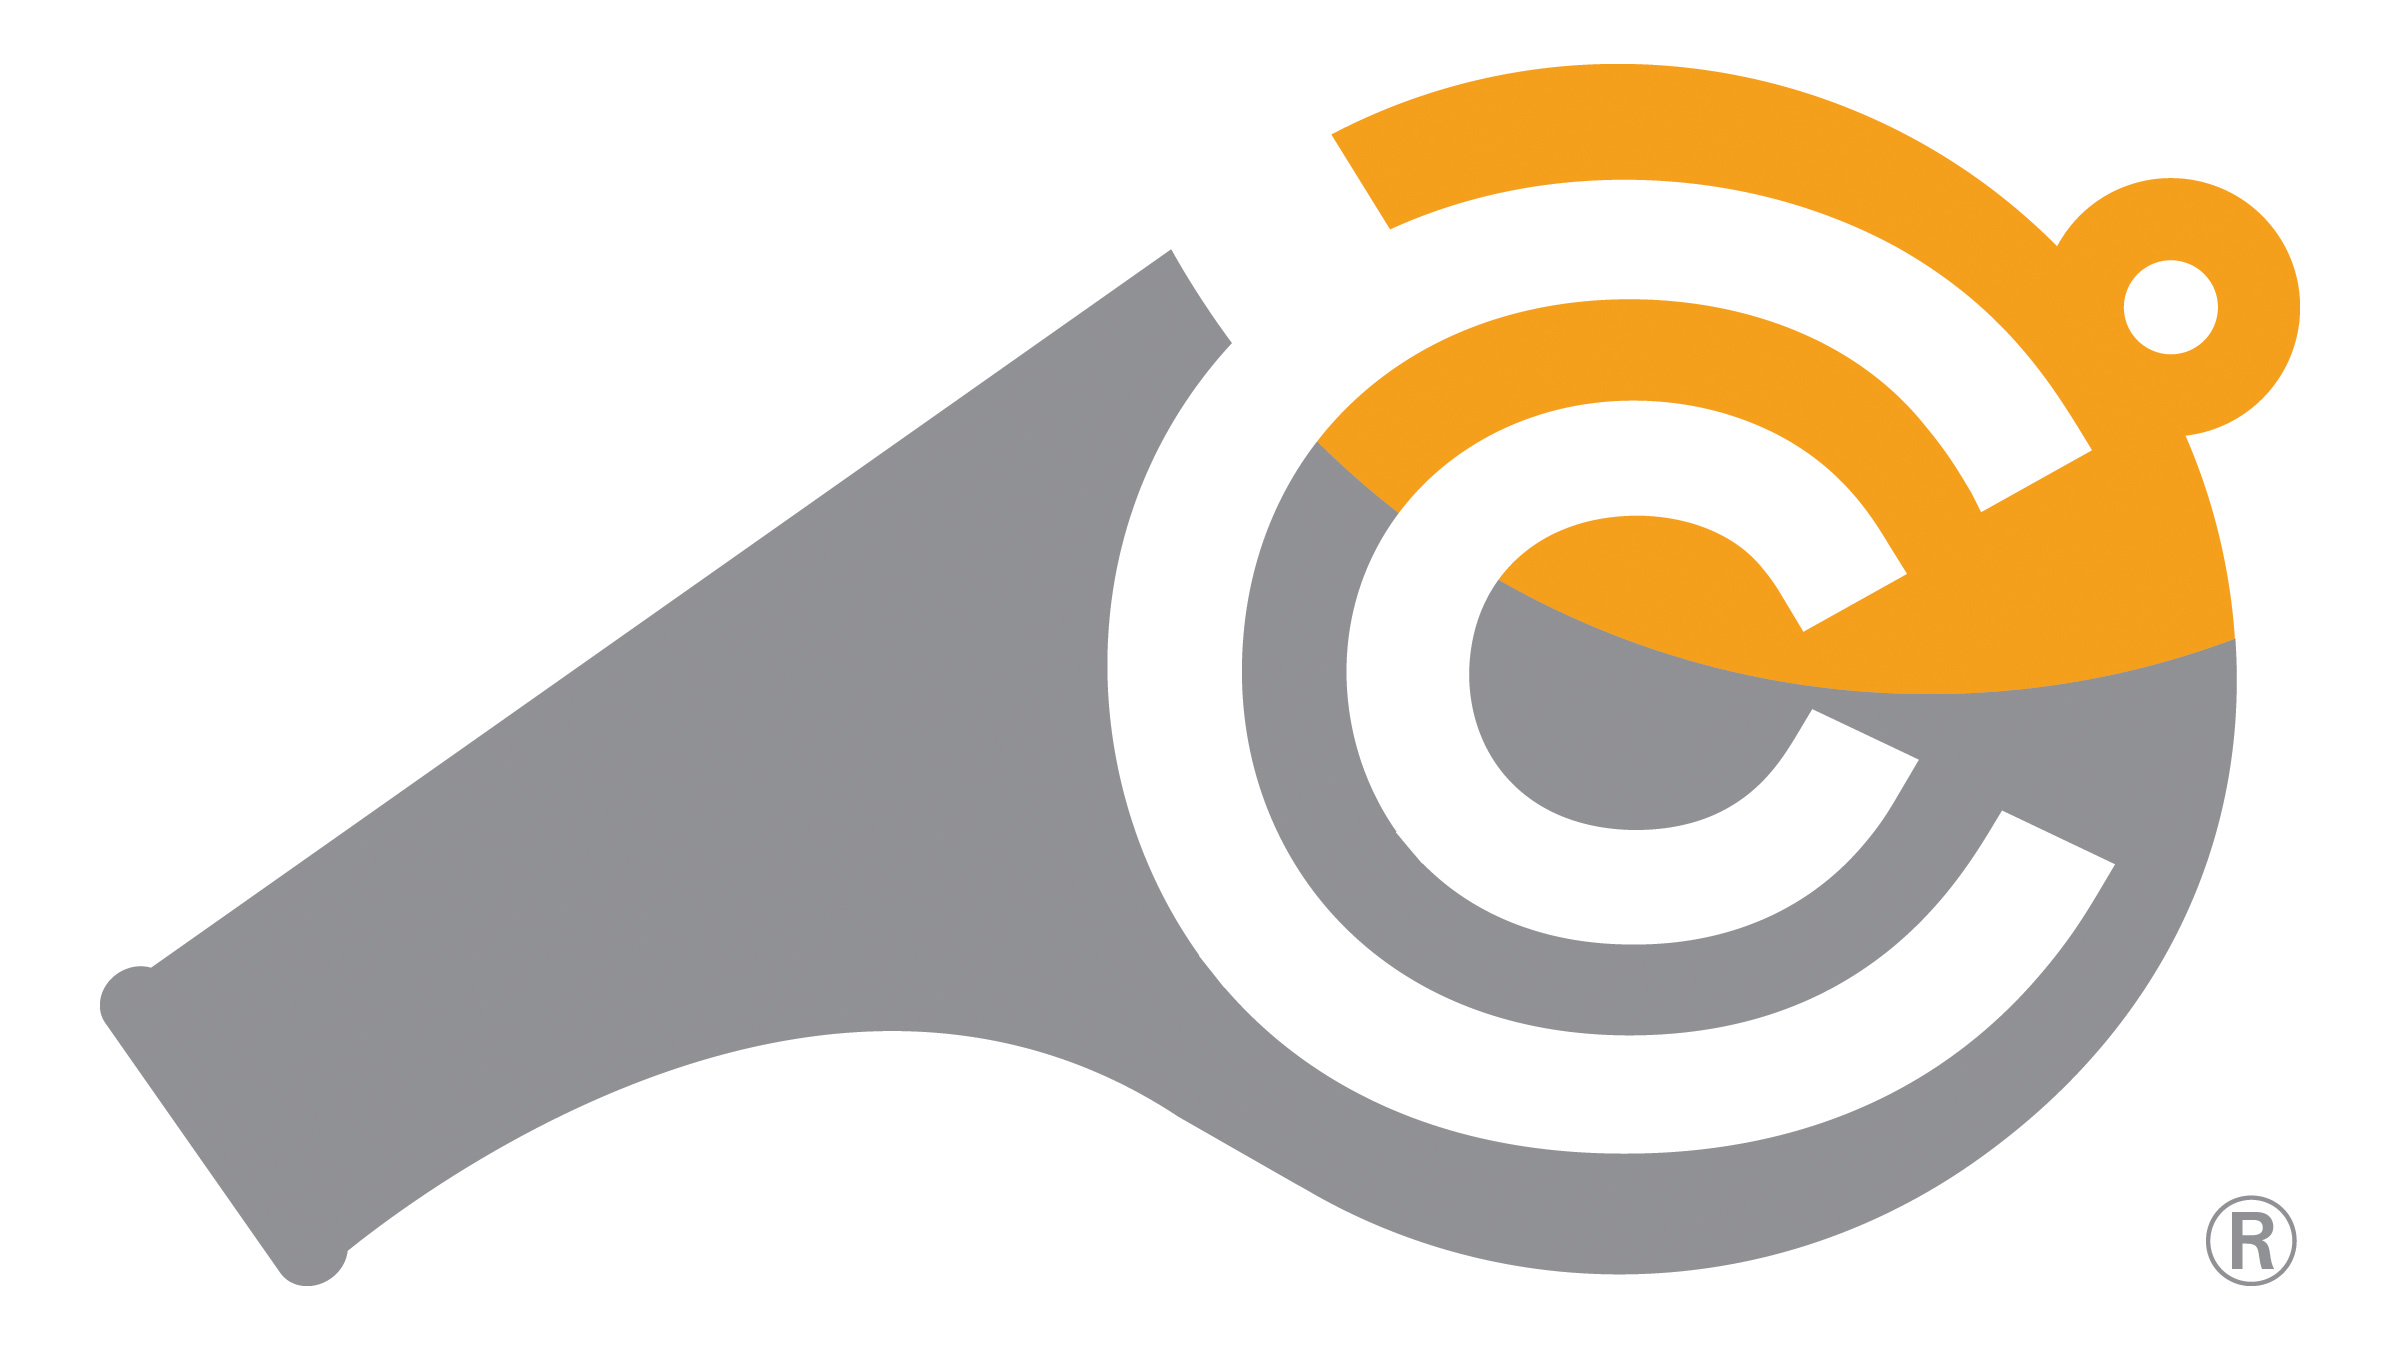 CC logo.jpg